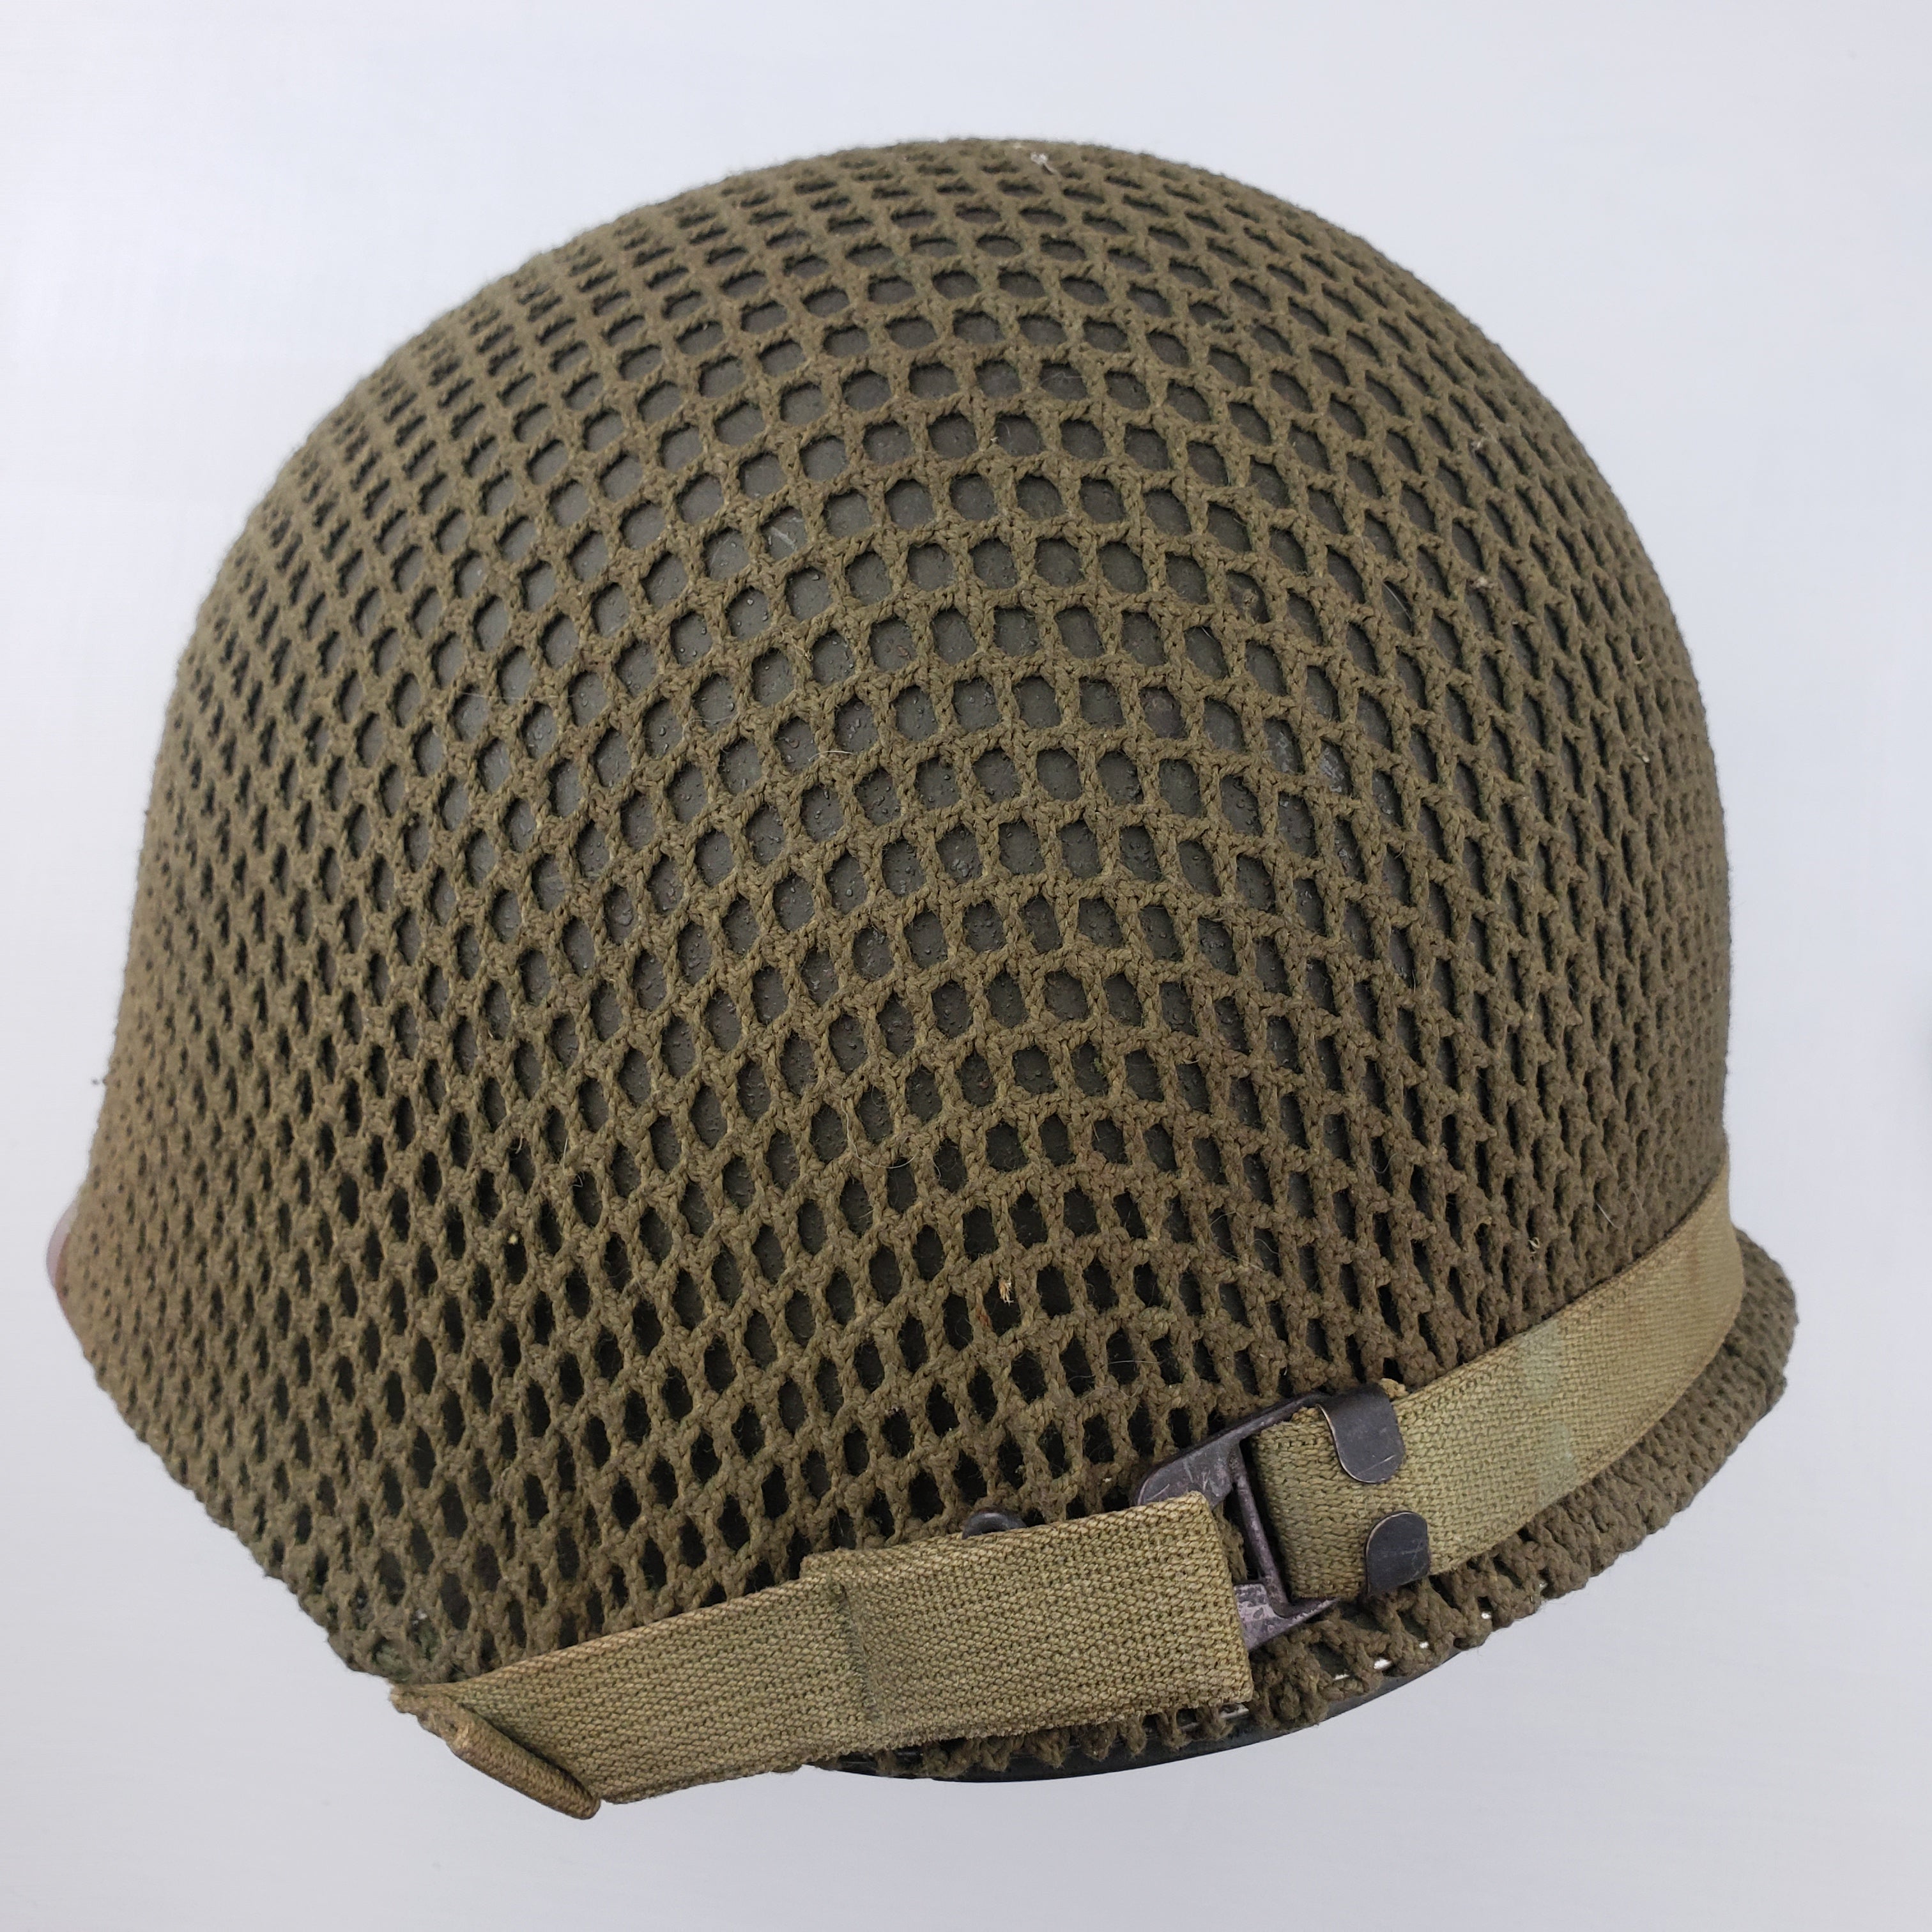 M1 Helmet Cover - Shrimp Net - Original WWII – J. Murray Inc. 1944